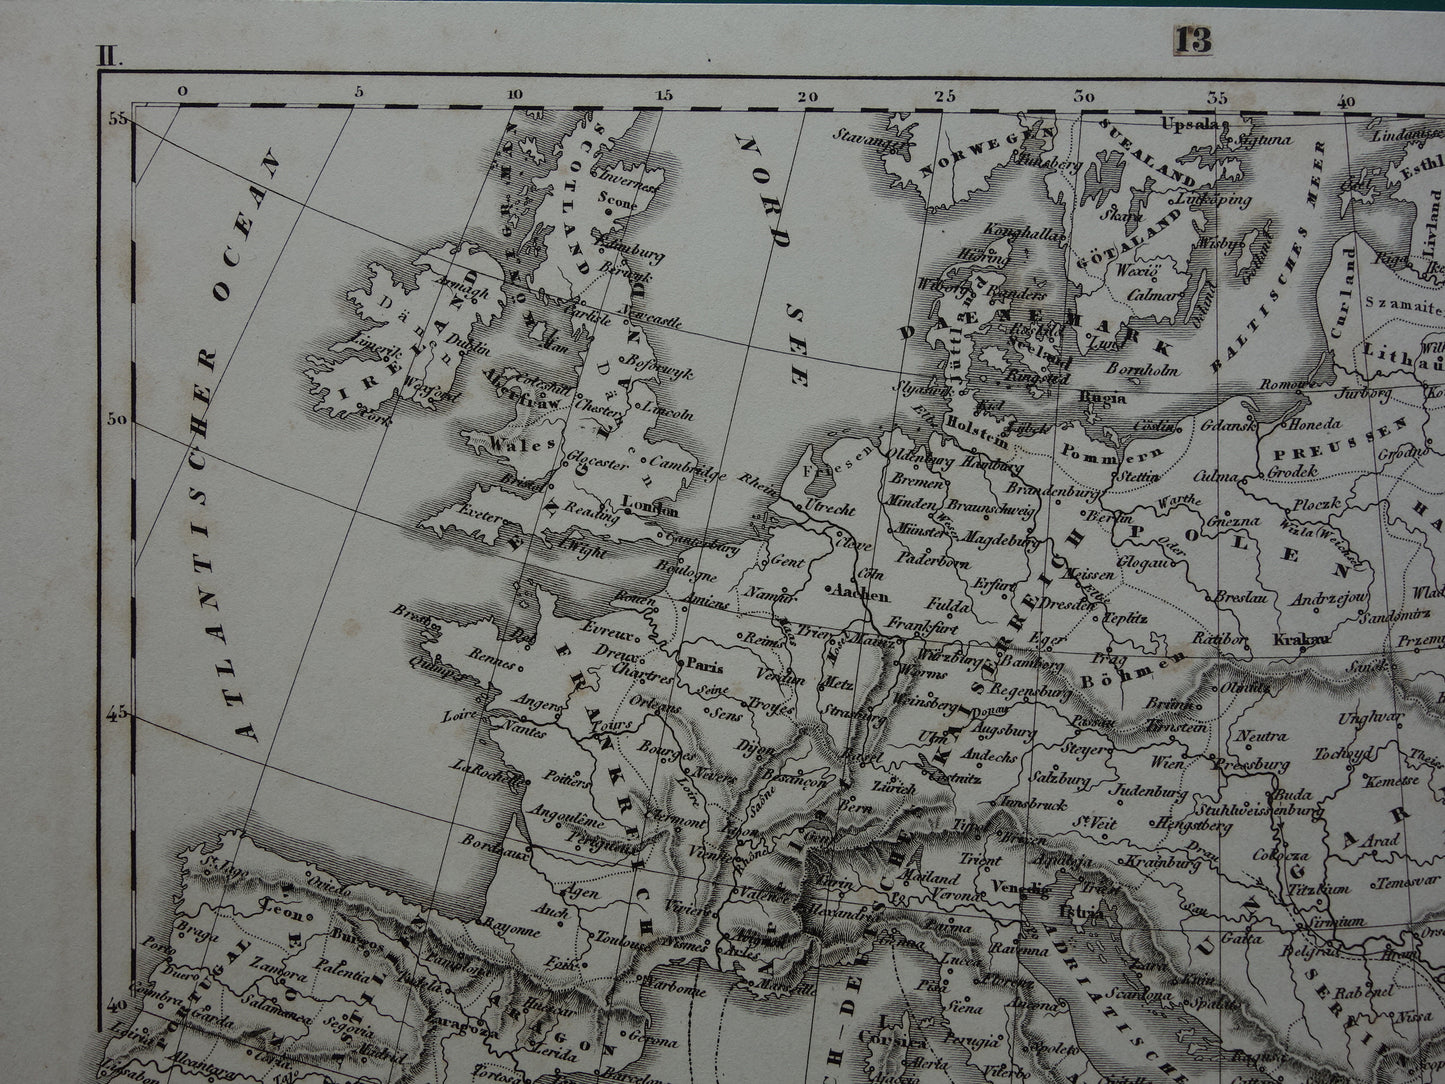 Antieke kaart van EUROPA tijdens kruistochten 175+ jaar oude landkaart van continent uit 1849 - originele vintage historische kaarten